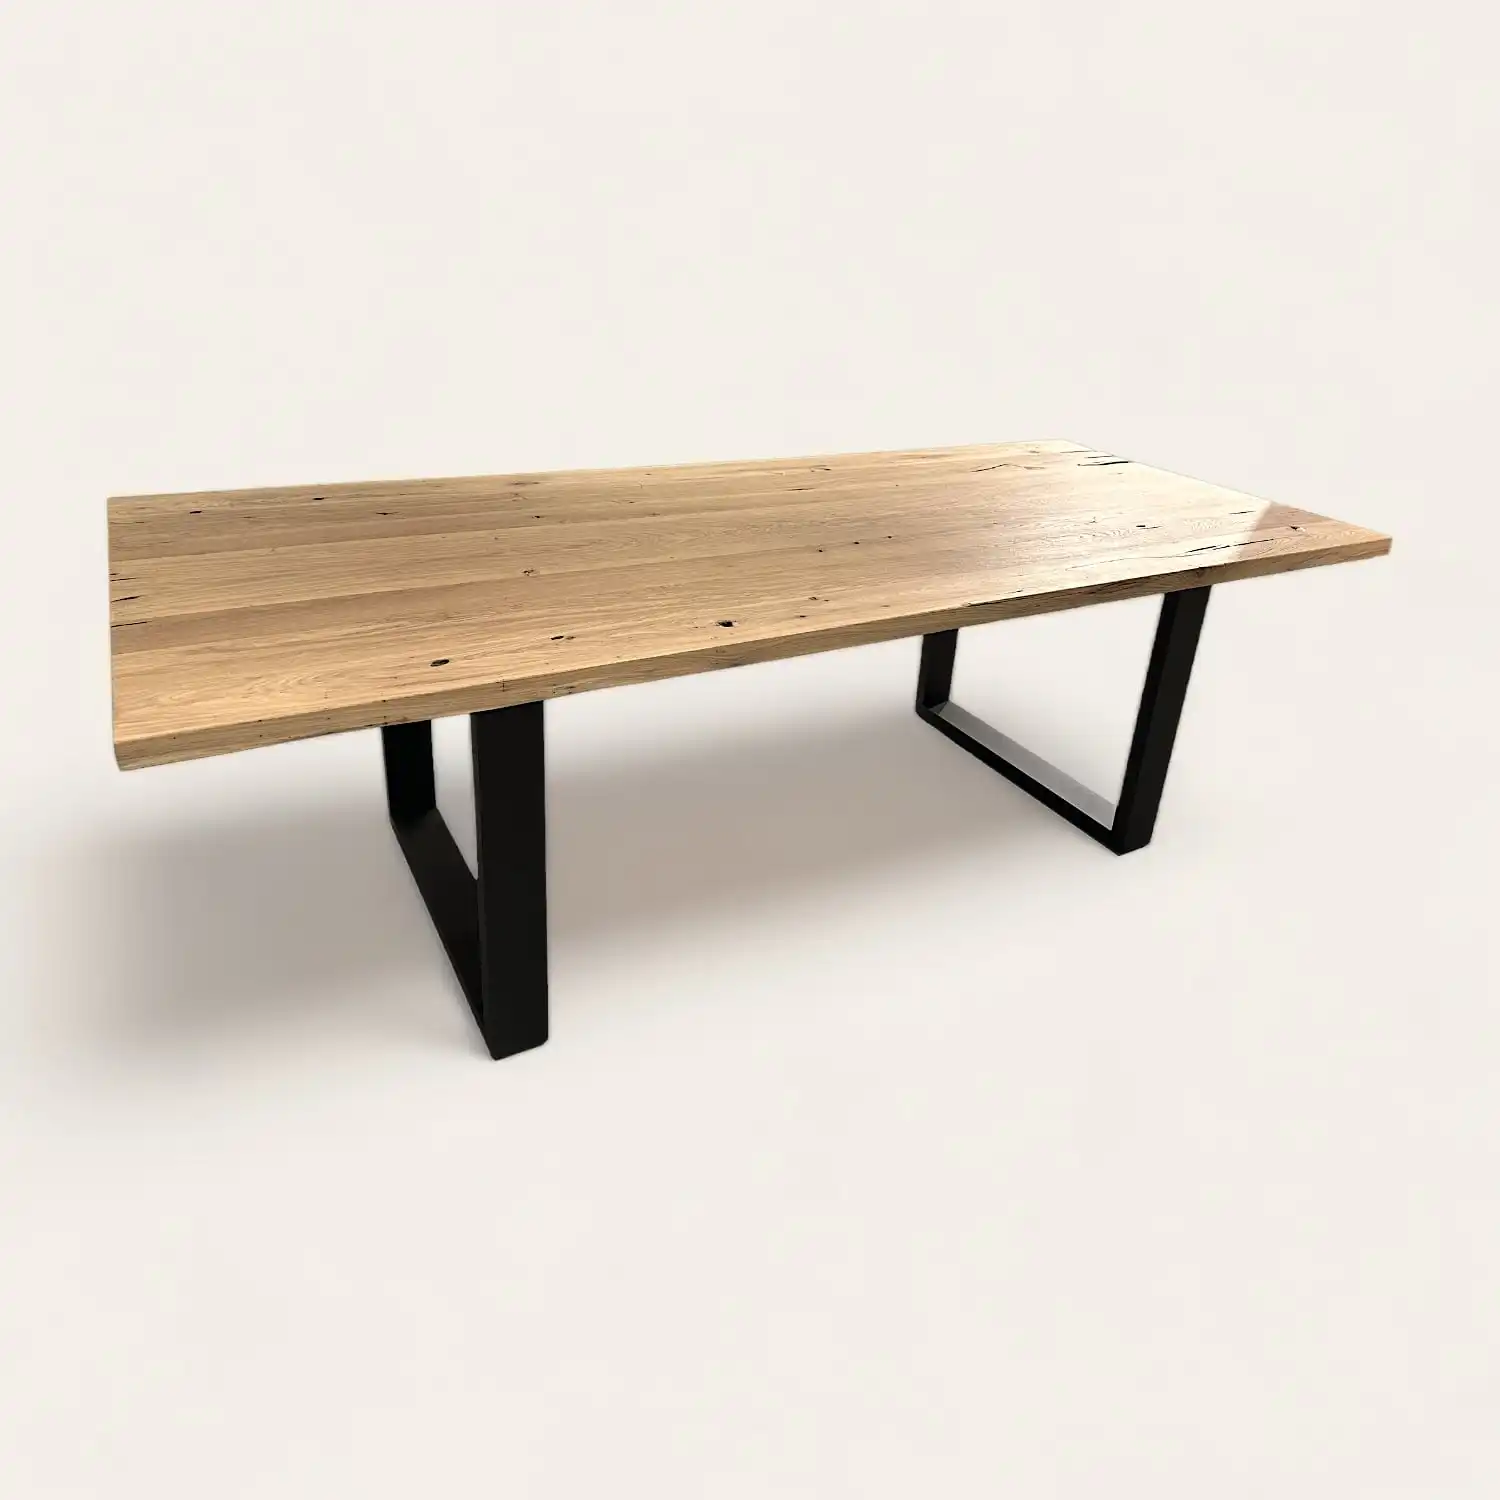  Table ancienne en bois clair avec pieds géométriques noirs, style minimaliste pour décoration intérieure moderne ou bureau épuré. 